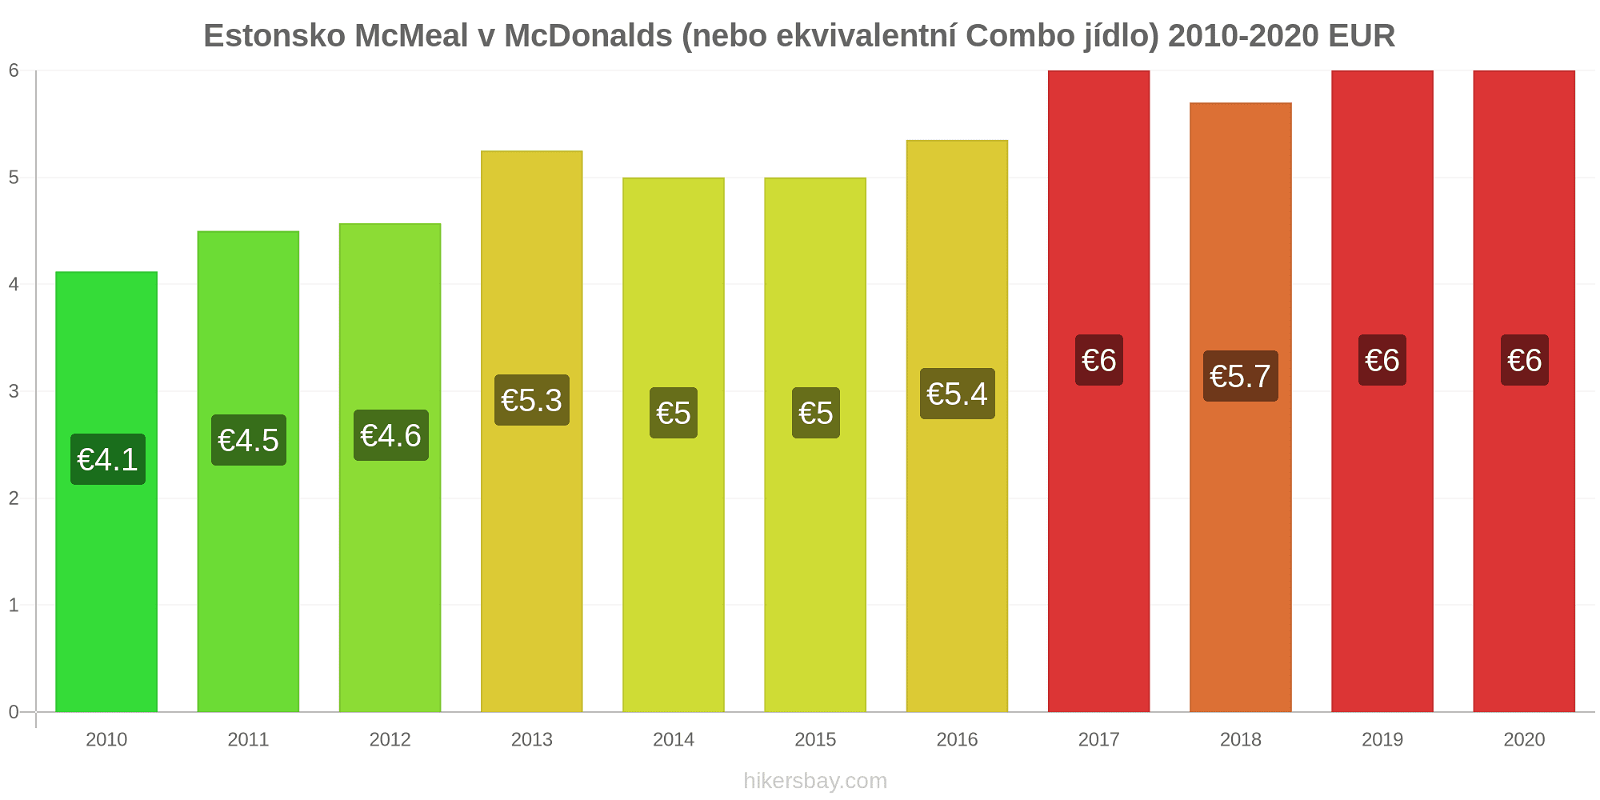 Estonsko změny cen McMeal v McDonalds (nebo ekvivalentní Combo jídlo) hikersbay.com